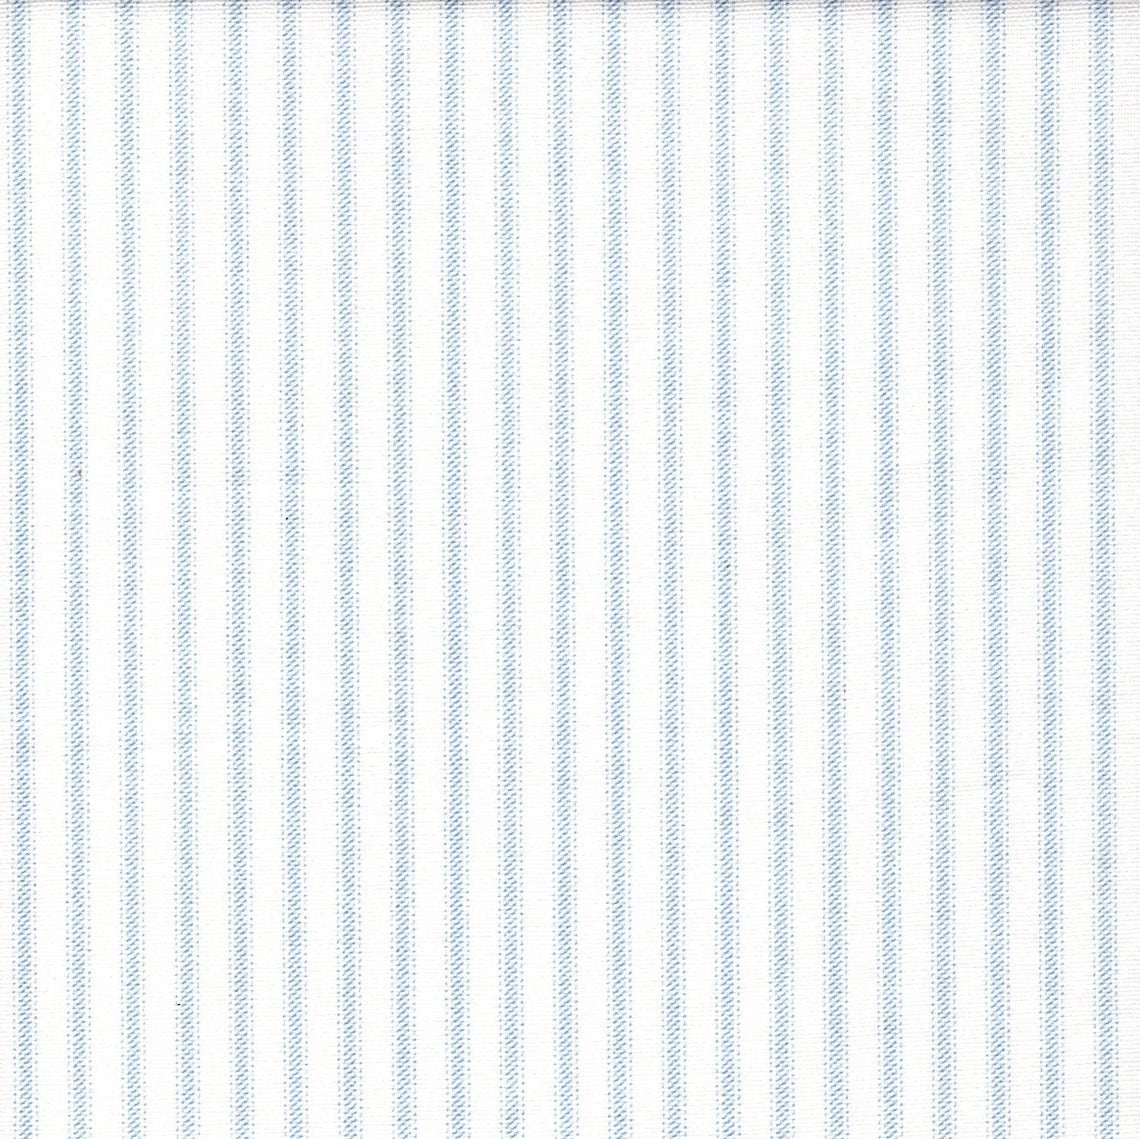 duvet cover in classic pale blue ticking stripe